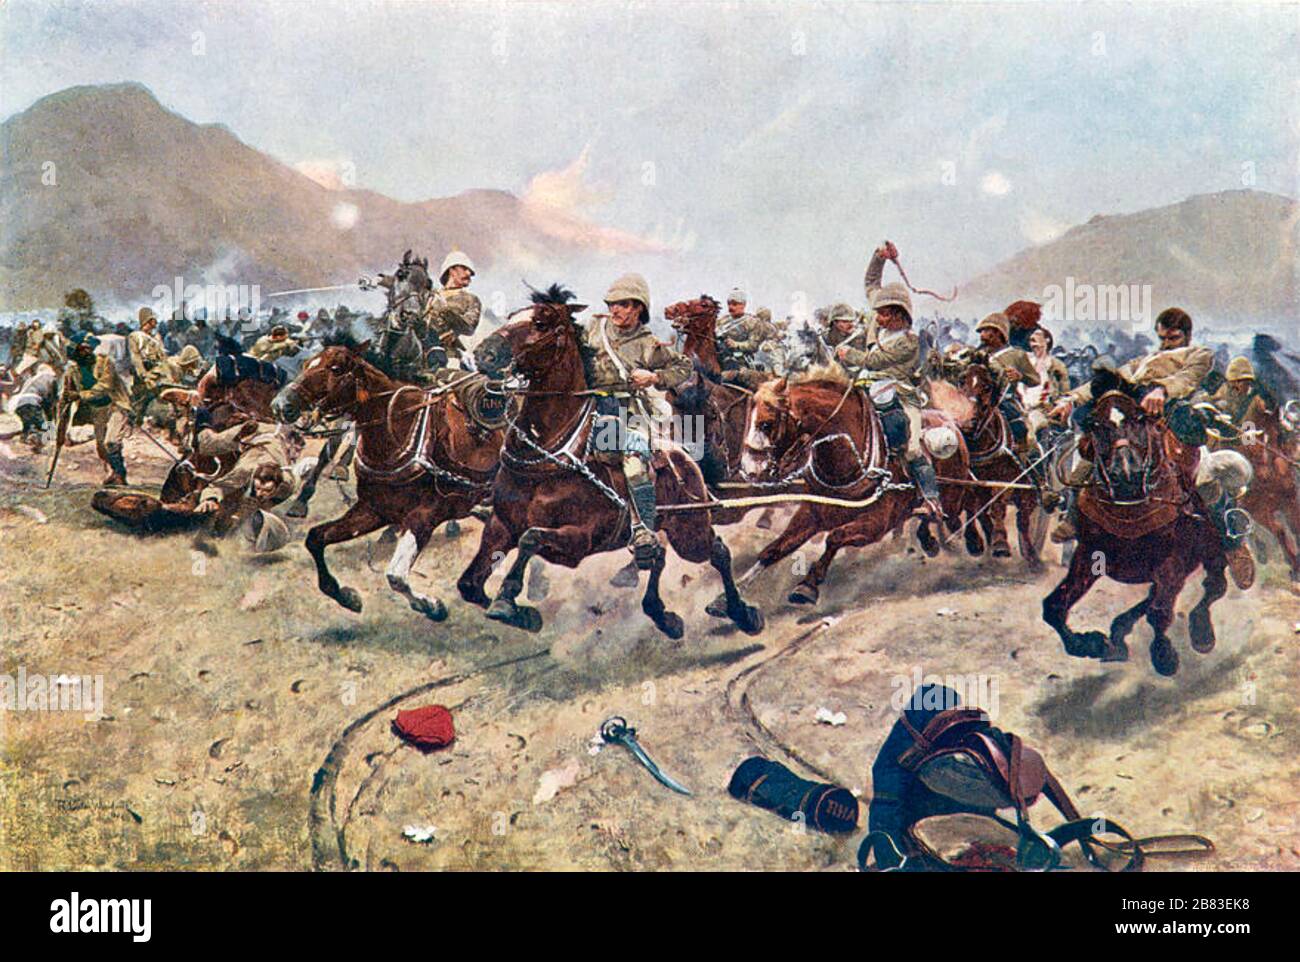 BATAILLE DE MAIWAND, Afghanistan, 27 juillet 1880. Le tableau de Richard Woodville de 1883 « baguette : sauver les armes » montrant l'artillerie royale se retirant d'une attaque afghane Banque D'Images